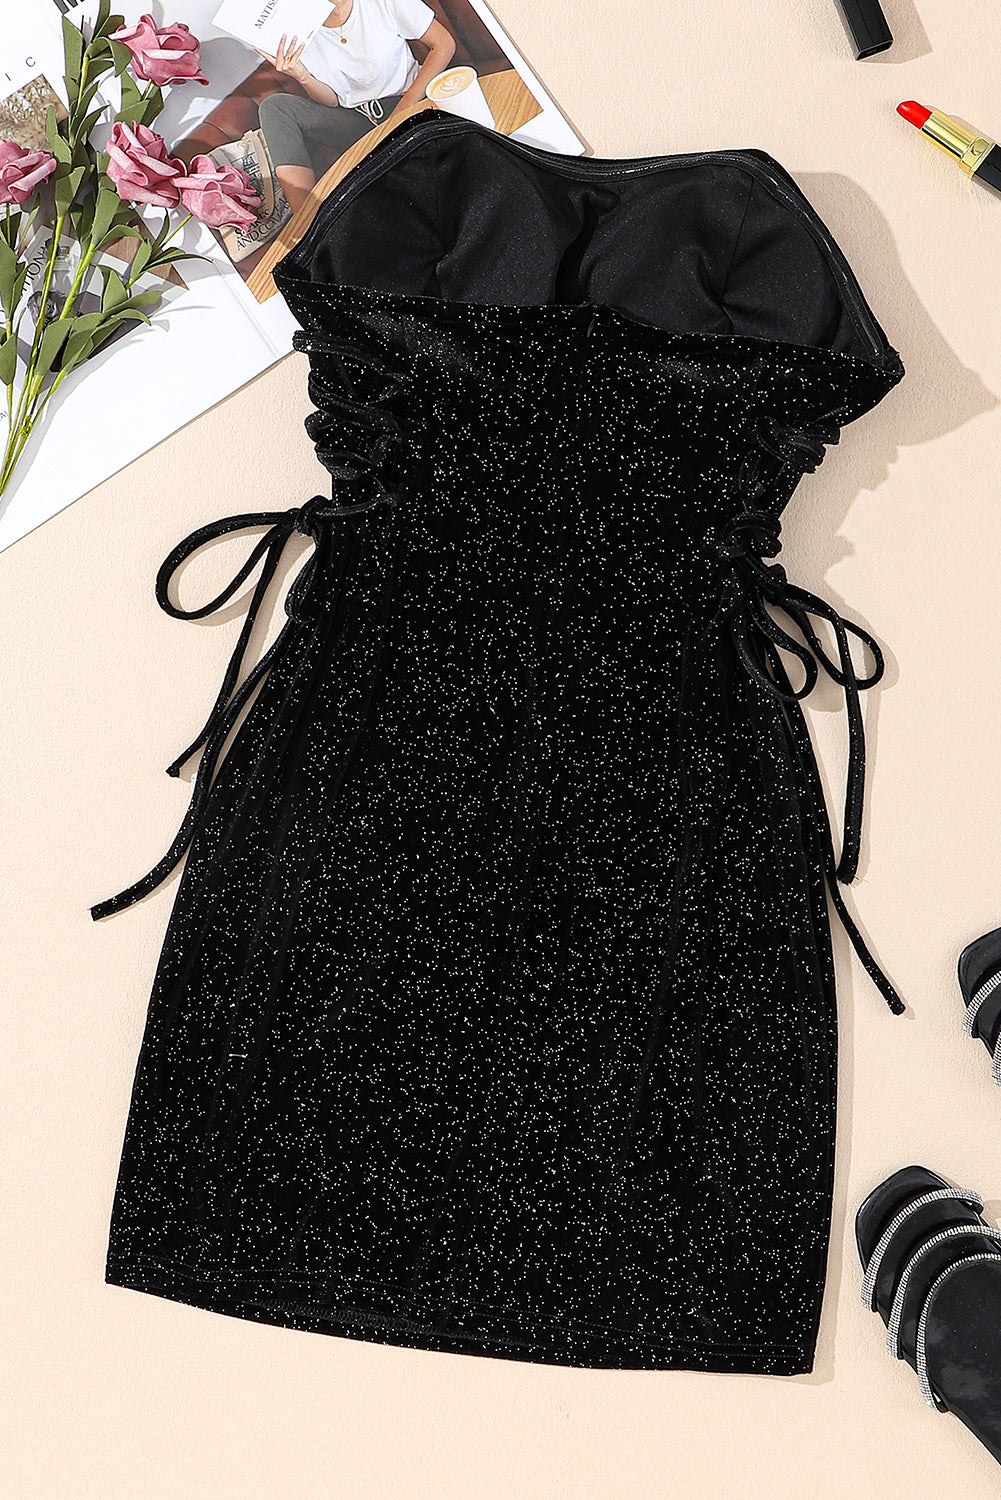 Schwarzes Schlauch-Minikleid mit Pailletten und Schnürung aus Samt